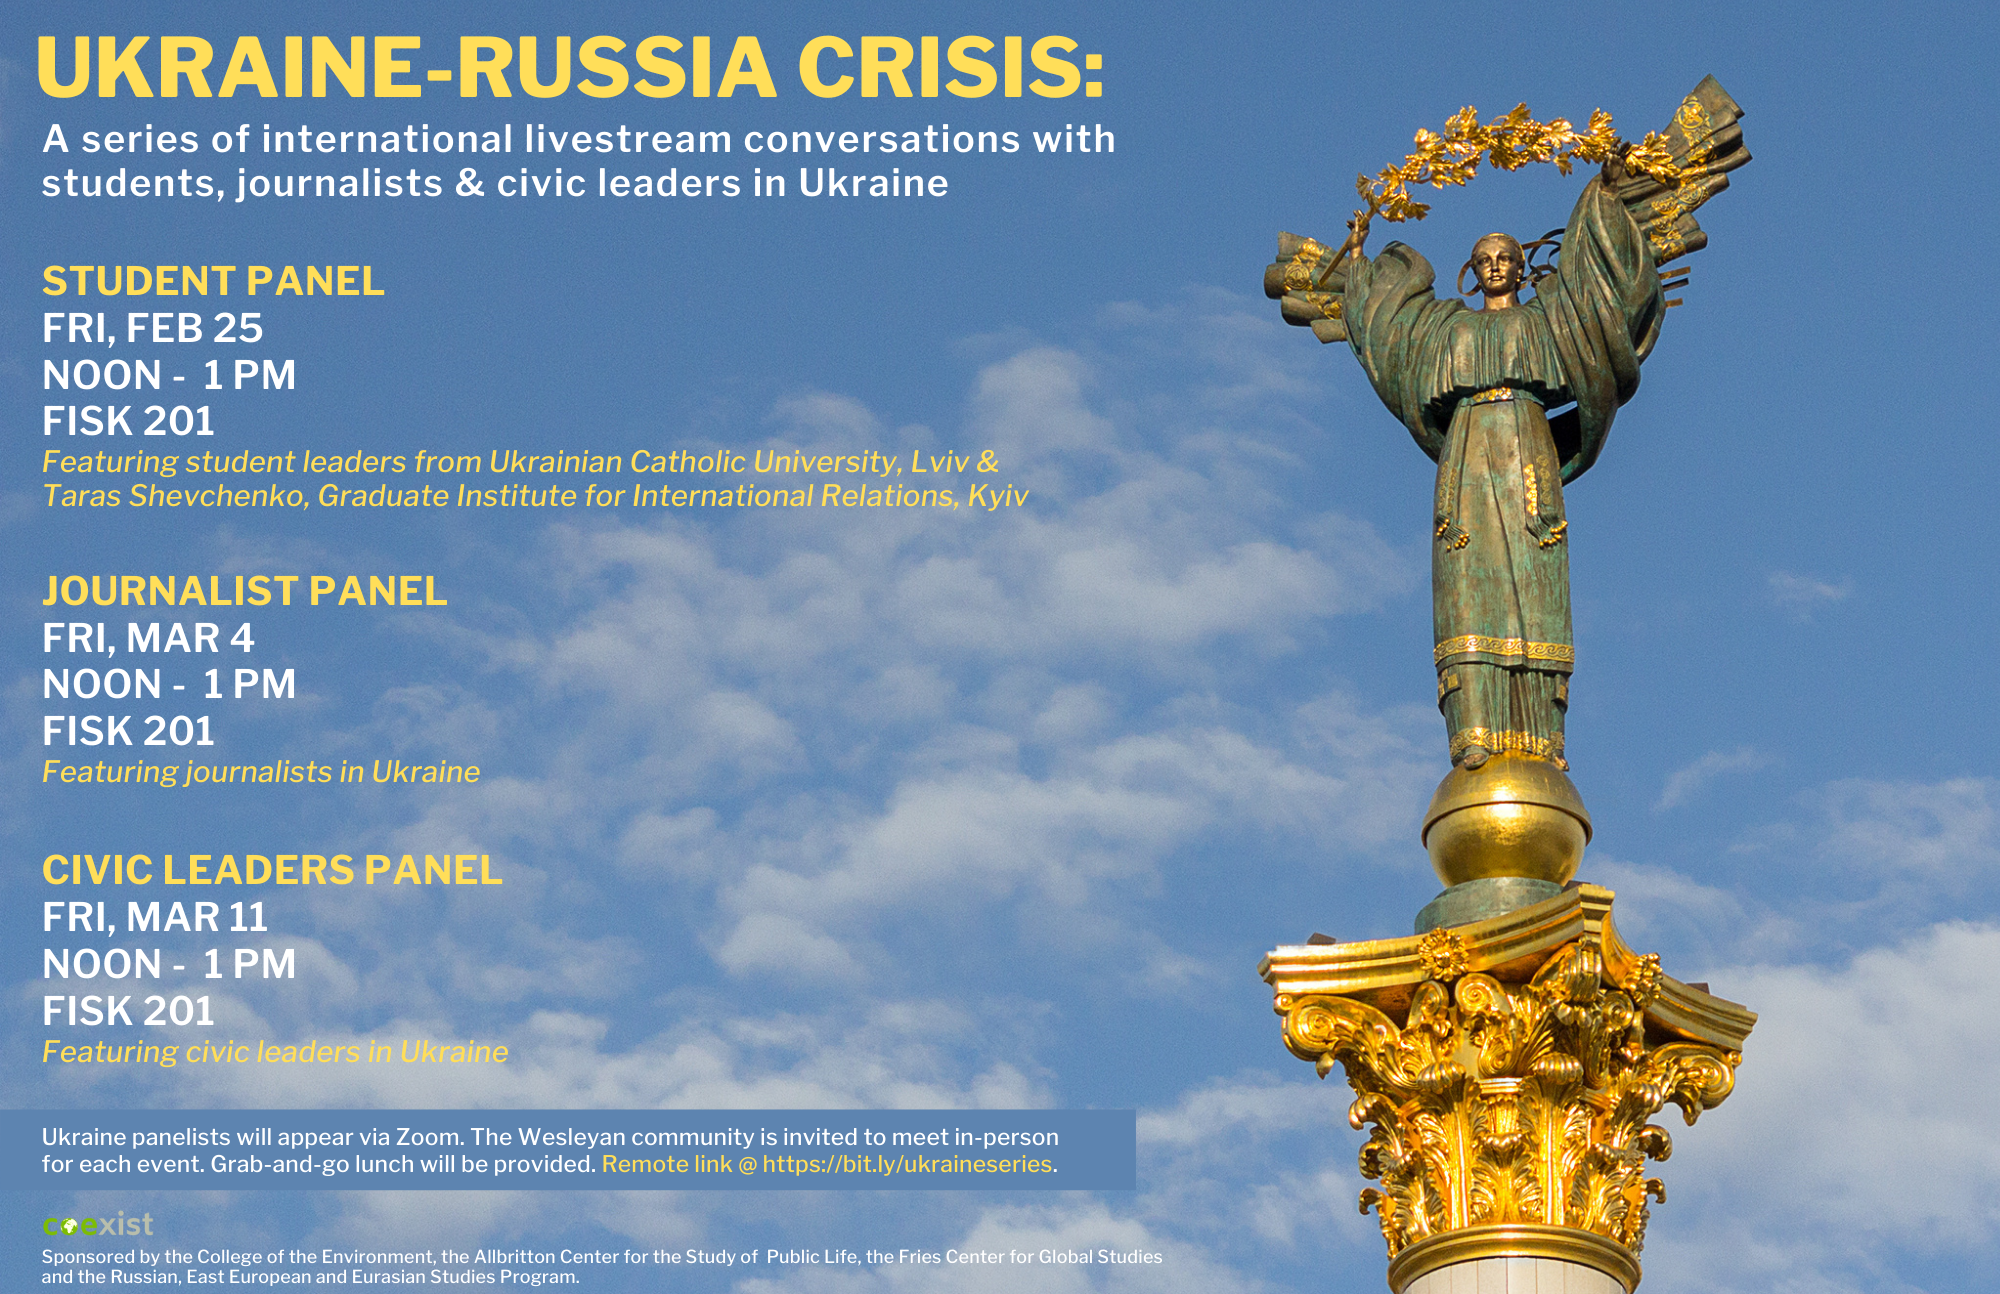 Poster advertising Ukraine-Russia Crisis Series